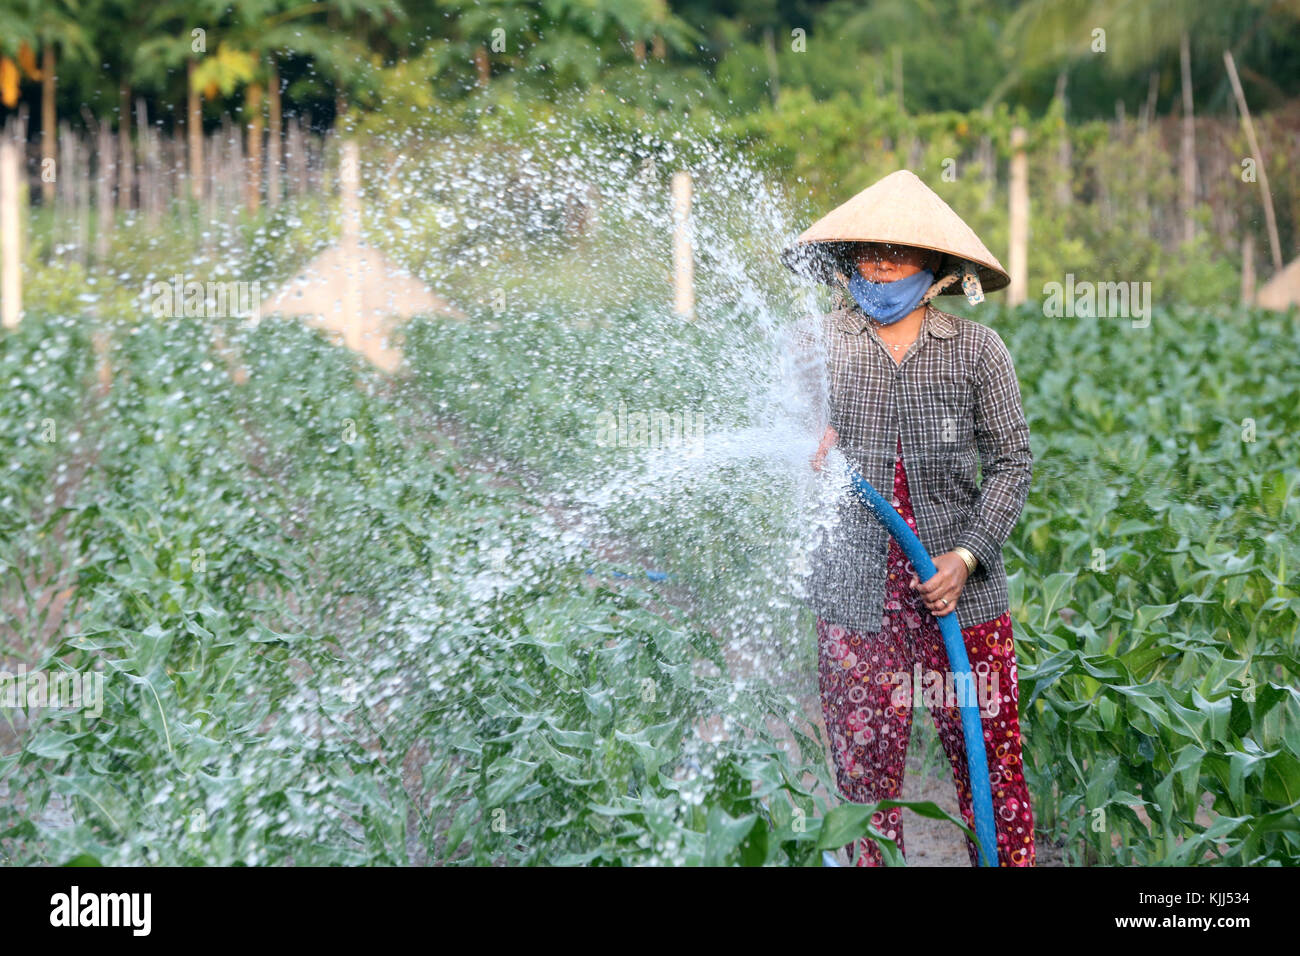 Maisfeld. Vietnamesische Frau Wasserstrahl aus einem Schlauch. Thay Ninh. Vietnam. Stockfoto